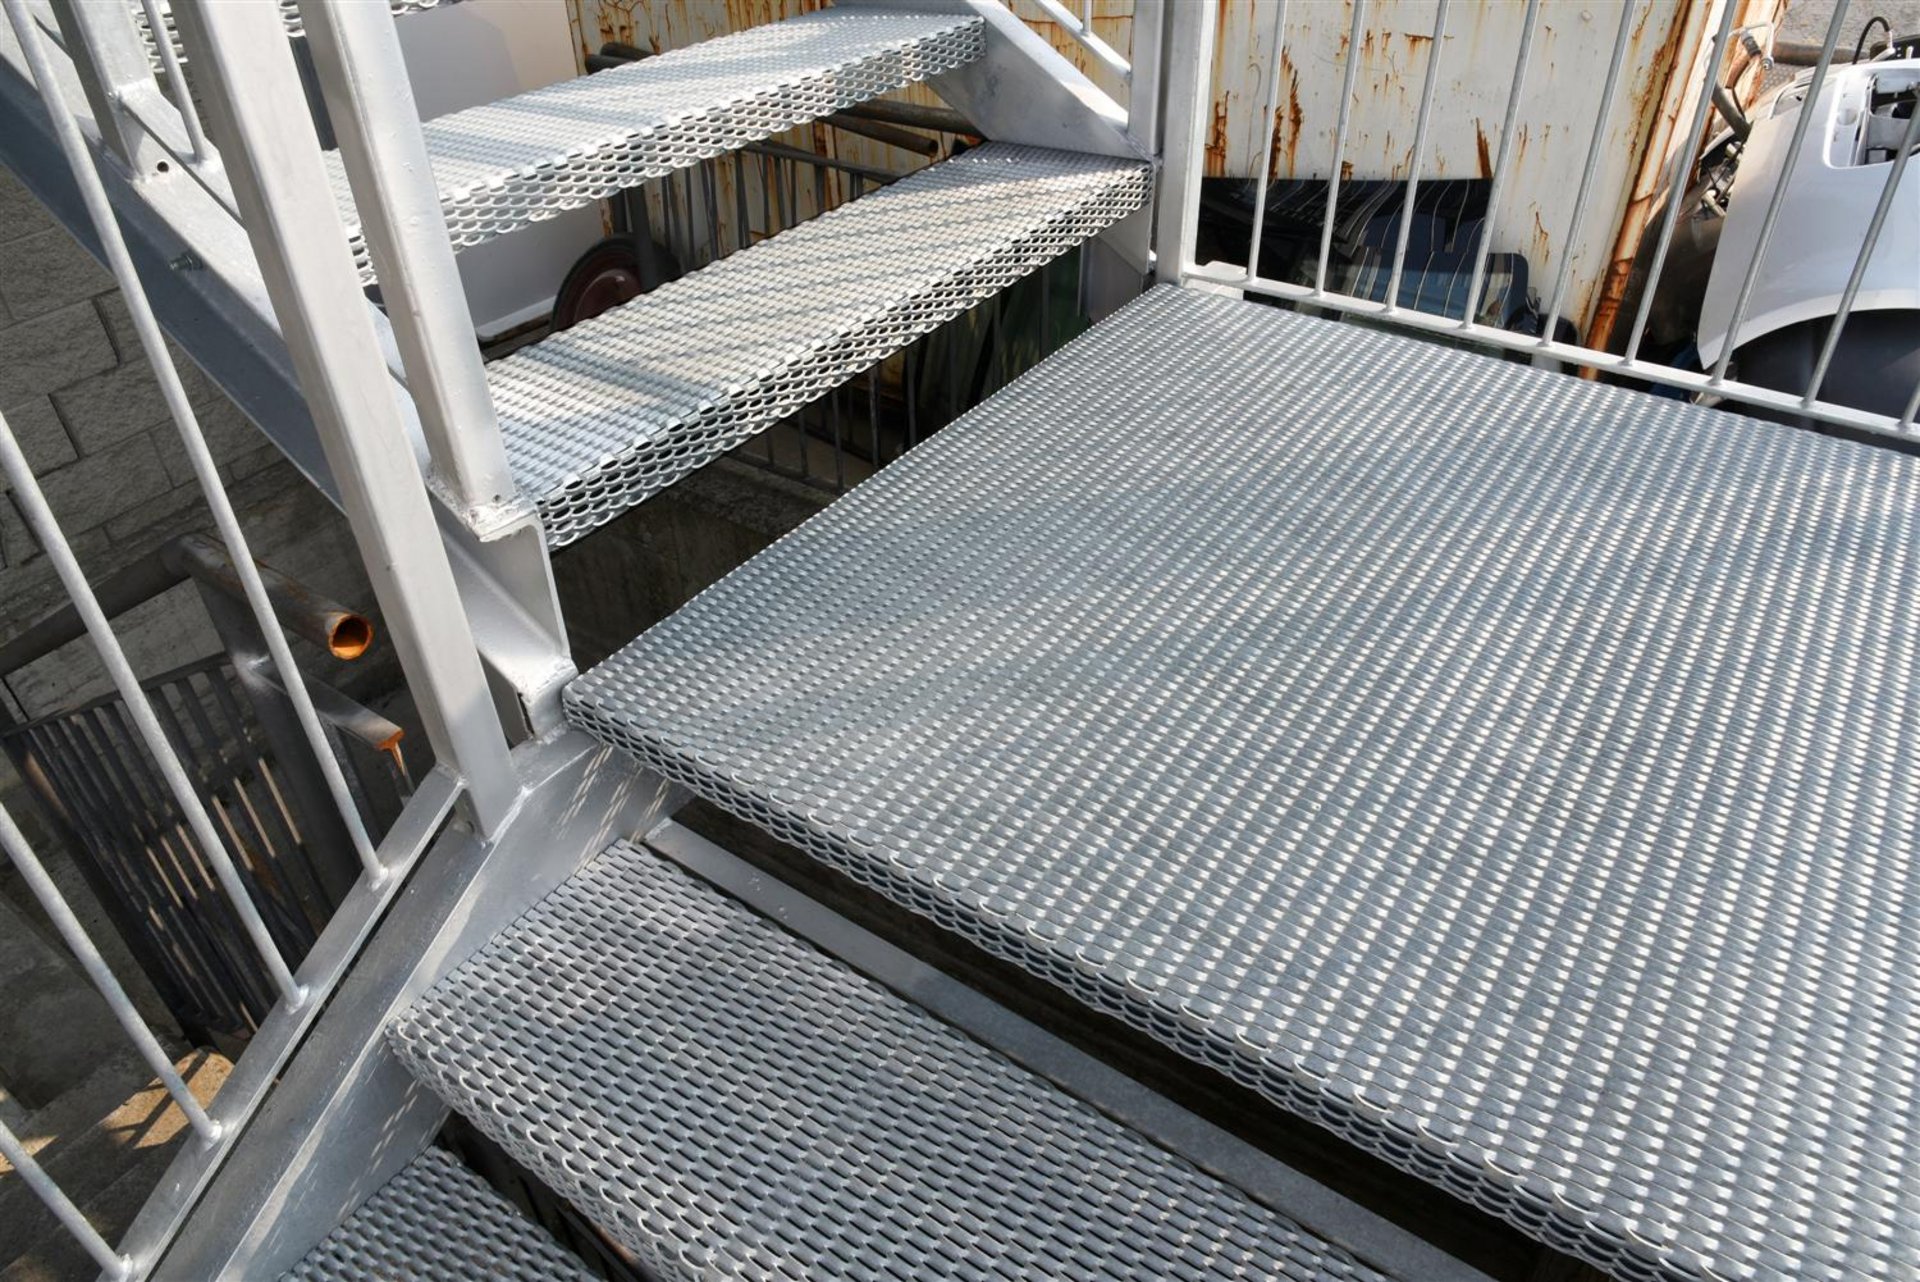 Ein gängiger Einsatz von Streckgitter findet sich bei Treppen oder Podesten.